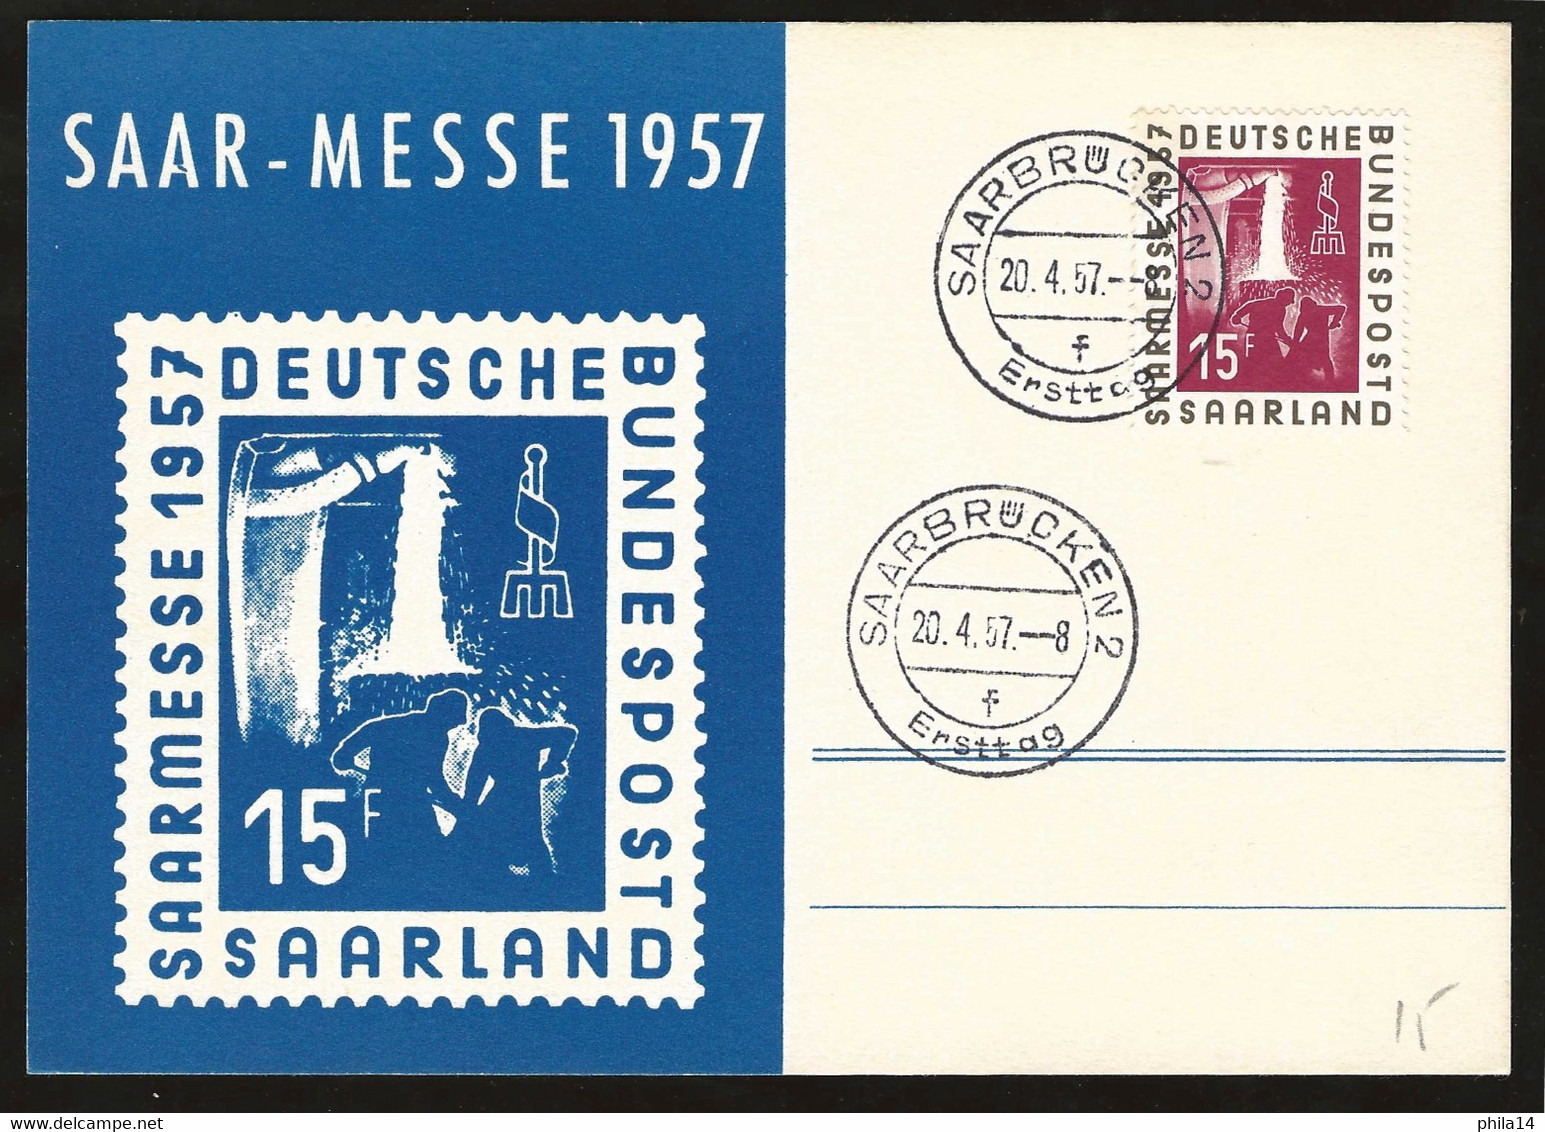 SP CARTE FONDERIE / SAAR MESSE 1957 / DEUTSCHE BUNDESPOST /  THEME MINERAUX / GEMS - Minéraux